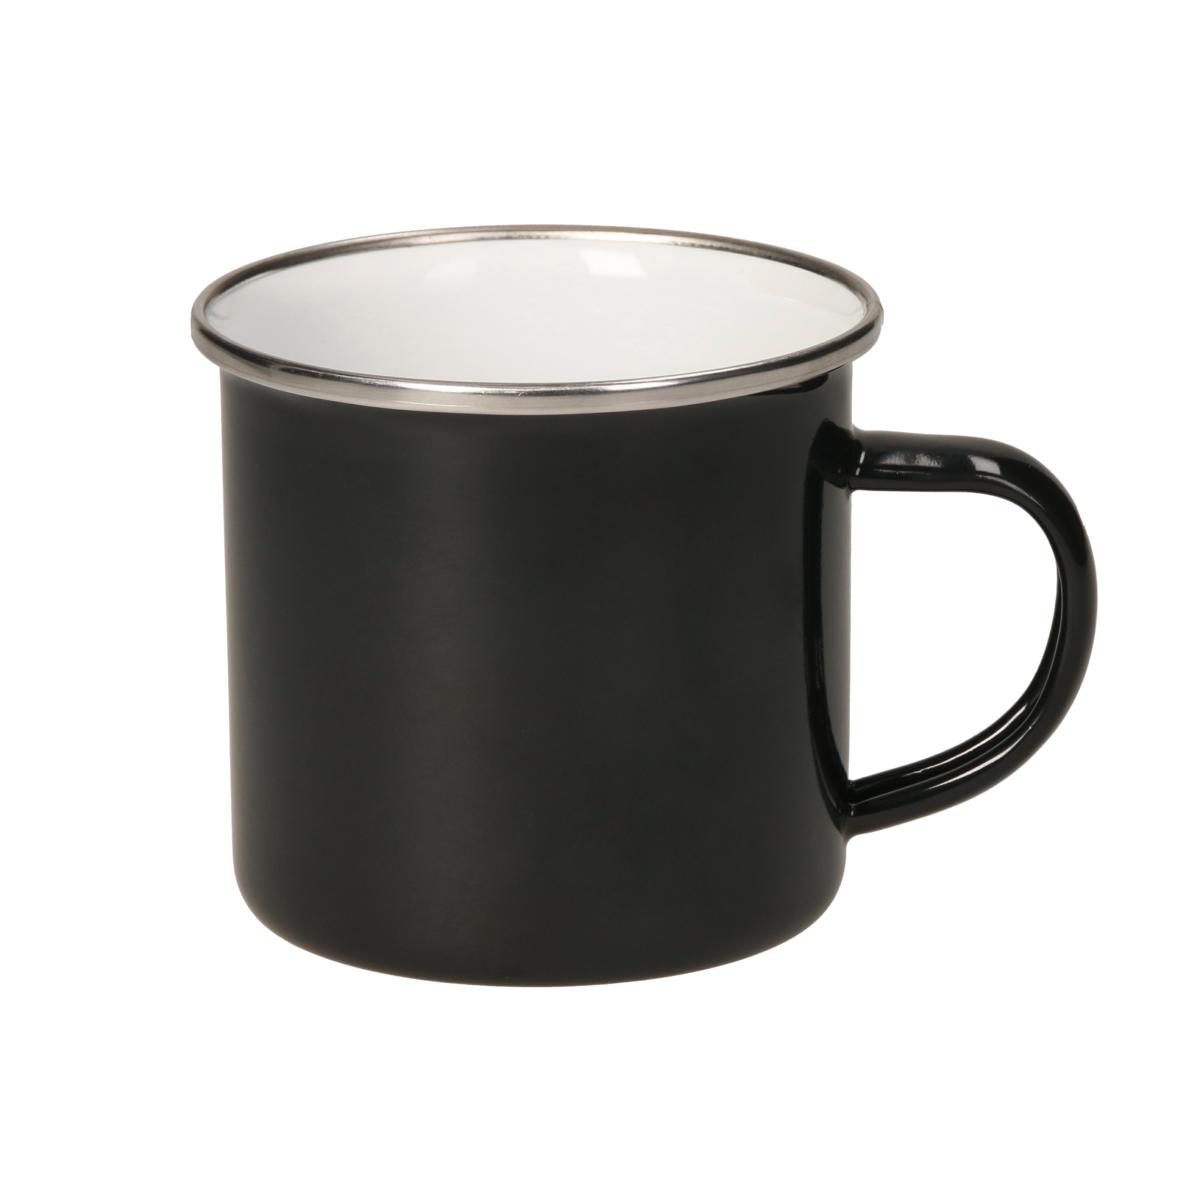 Retro Enamel Steel Coffee Cup - Little Shelford - Hartley Wintney